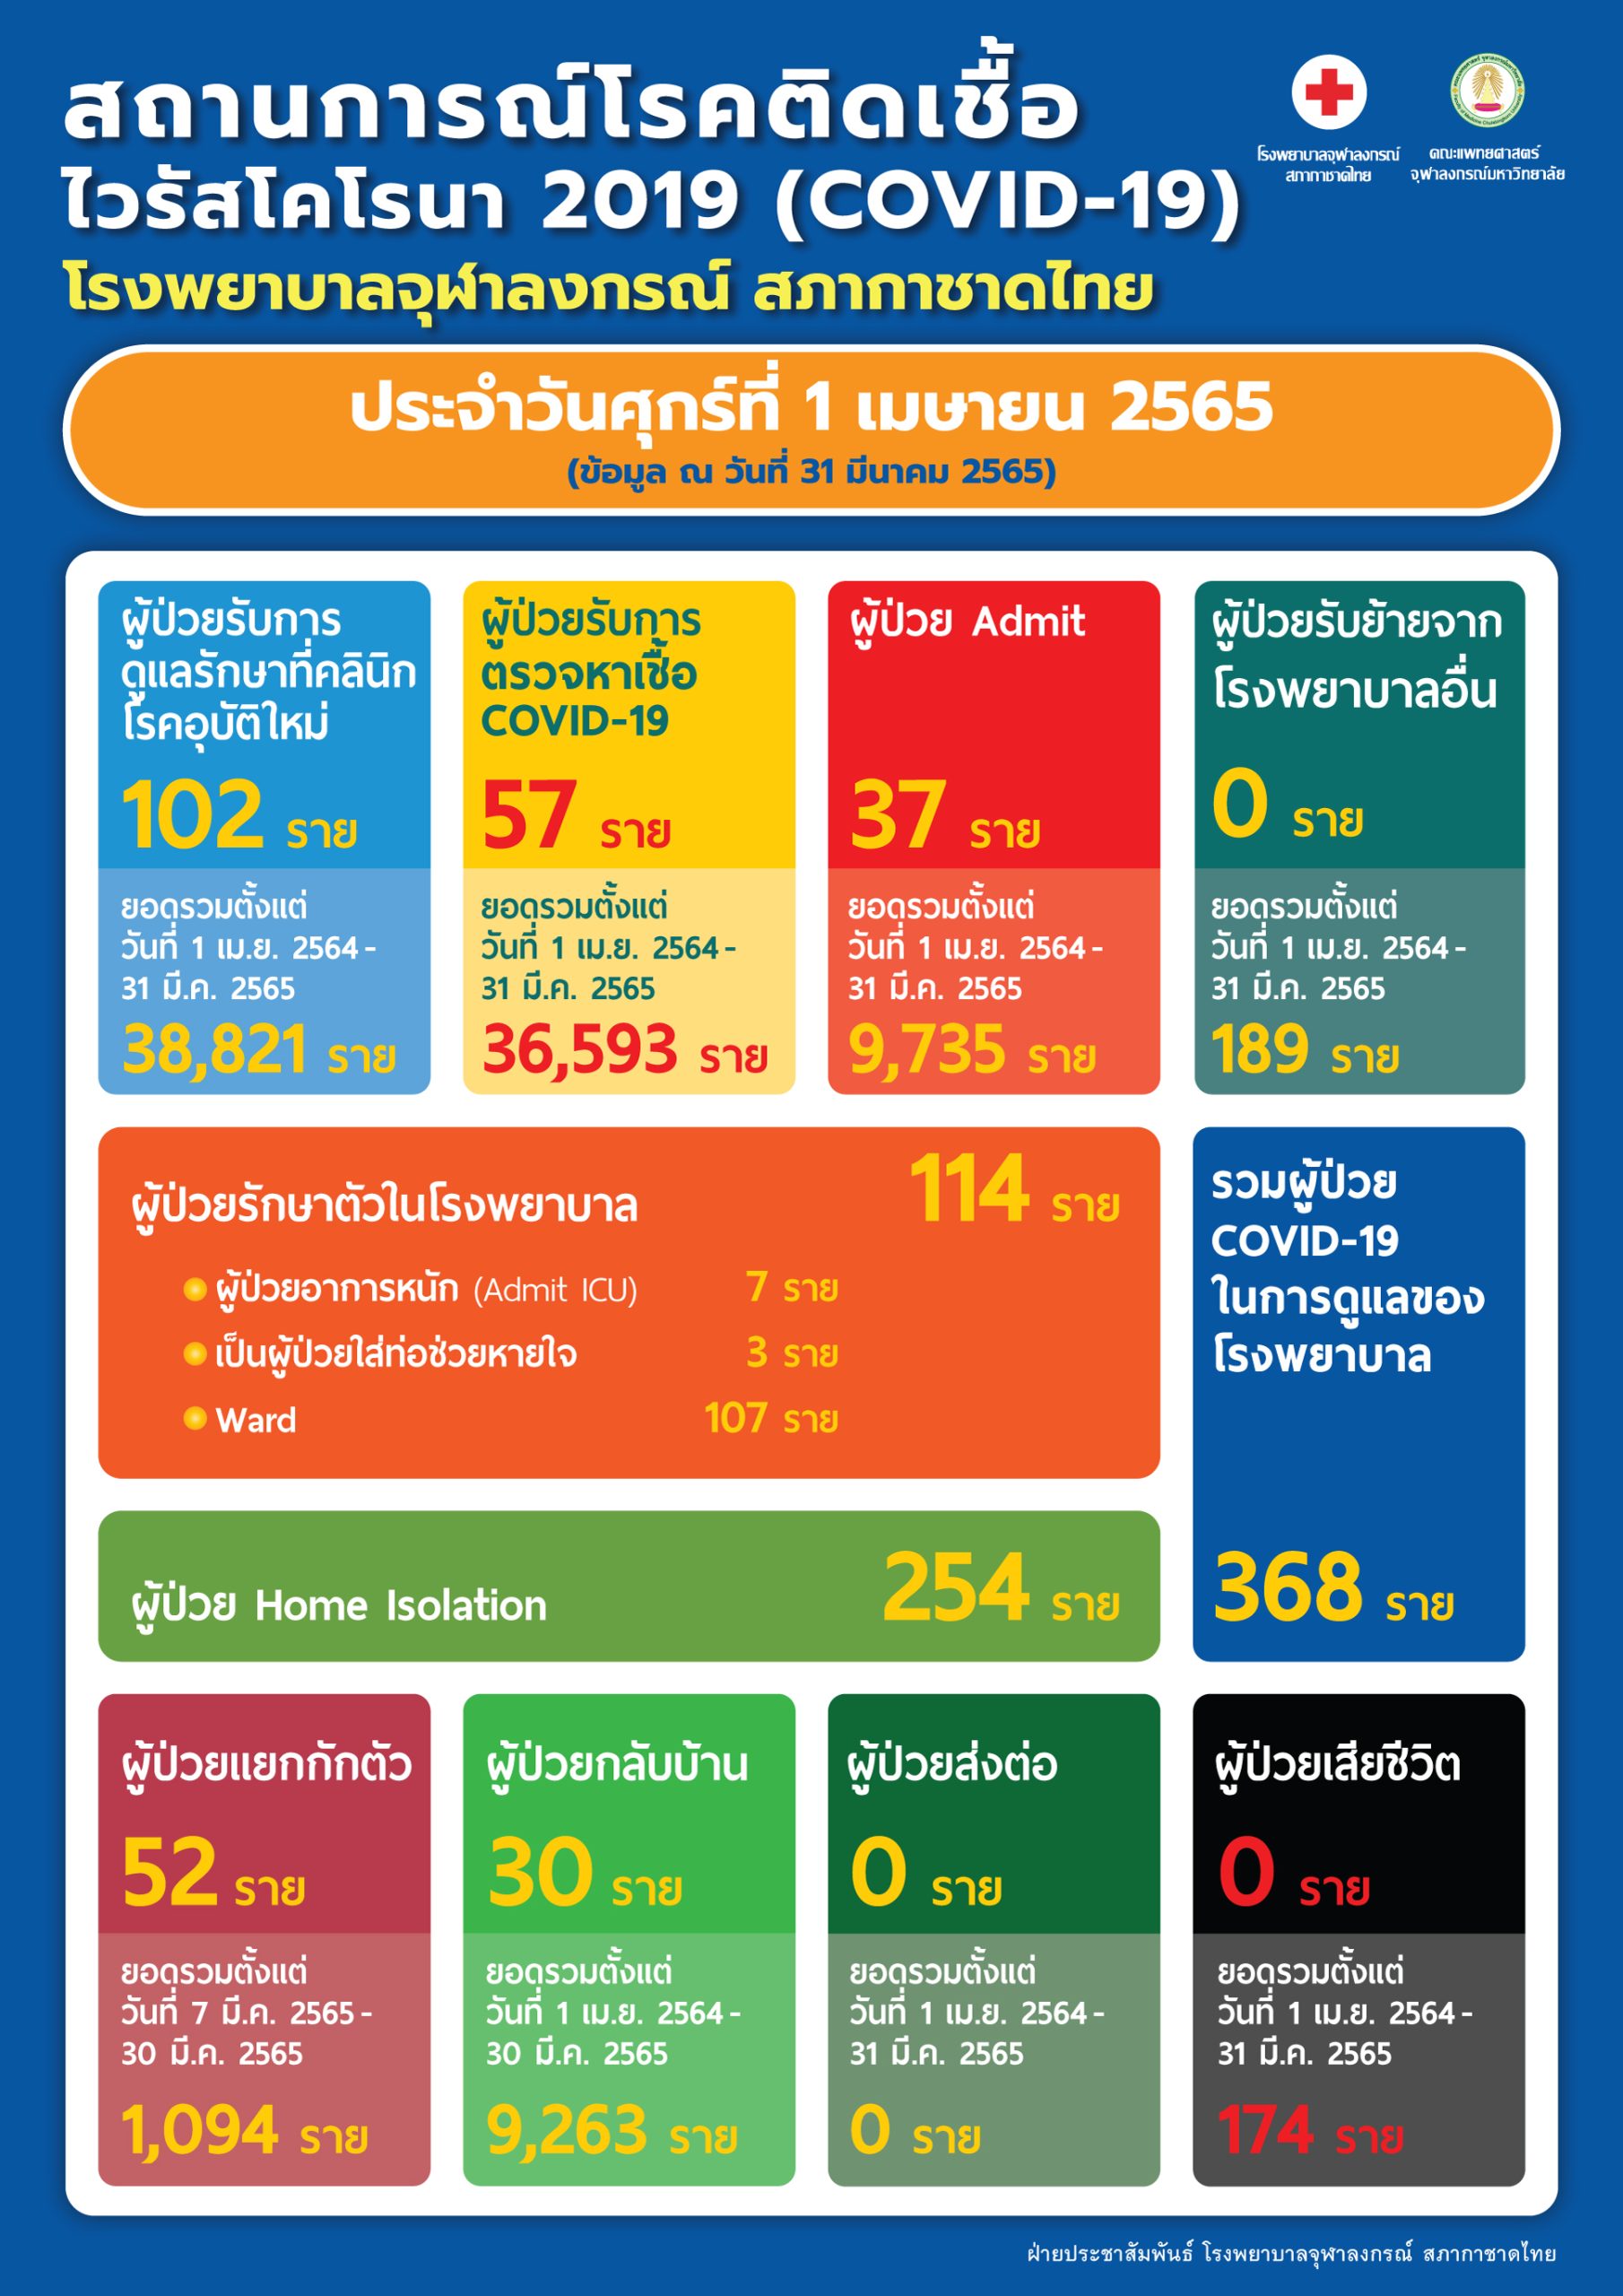 สถานการณ์โรคติดเชื้อไวรัสโคโรนา 2019 (COVID-19) โรงพยาบาลจุฬาลงกรณ์ สภากาชาดไทย ประจำวันศุกร์ที่ 1 เมษายน 2565